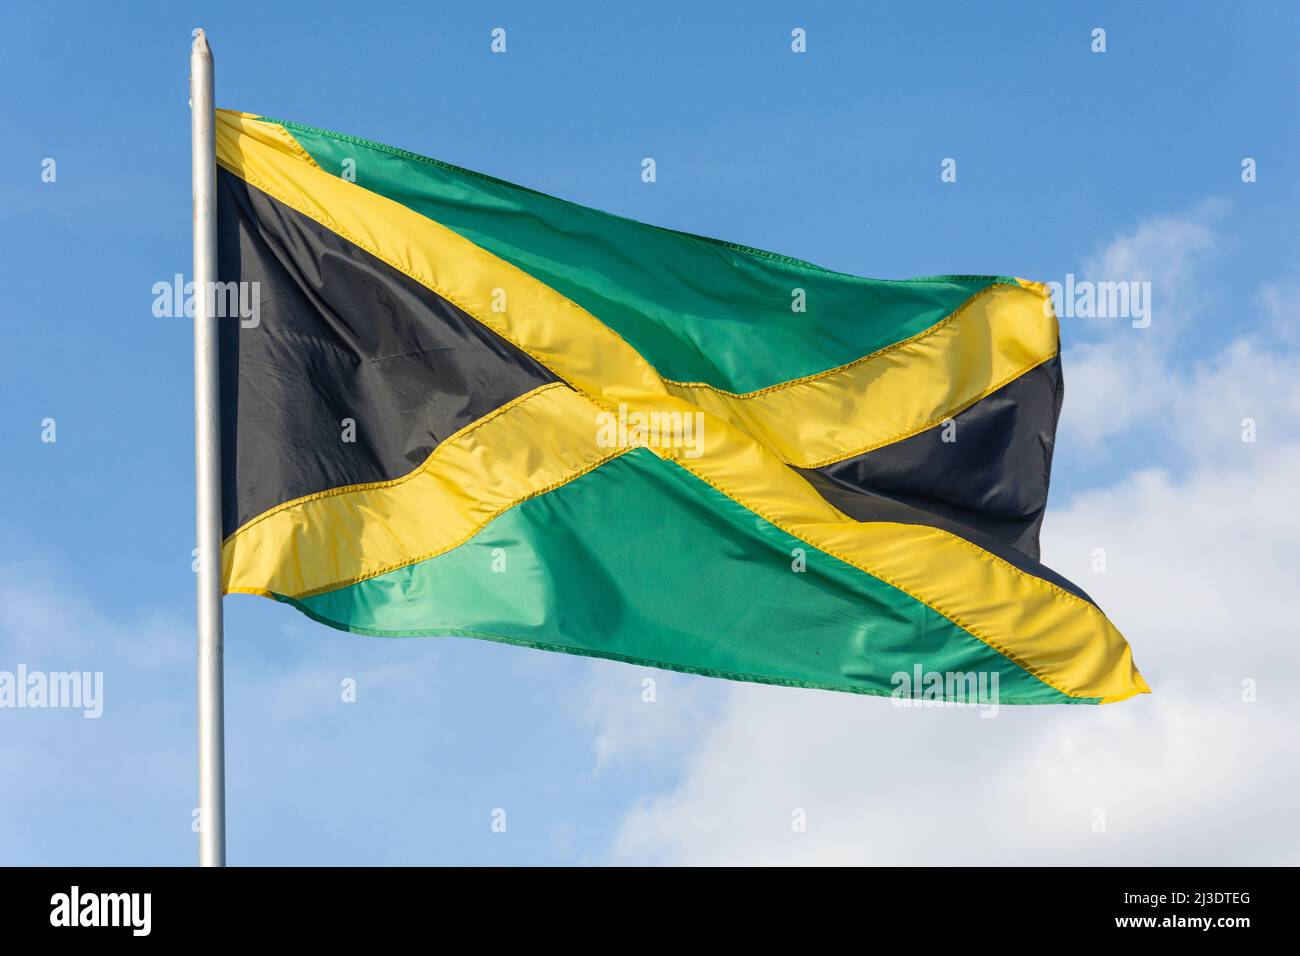 Bandera nacional de Jamaica, Kingston, Jamaica, Antillas Mayores, Caribe Foto de stock